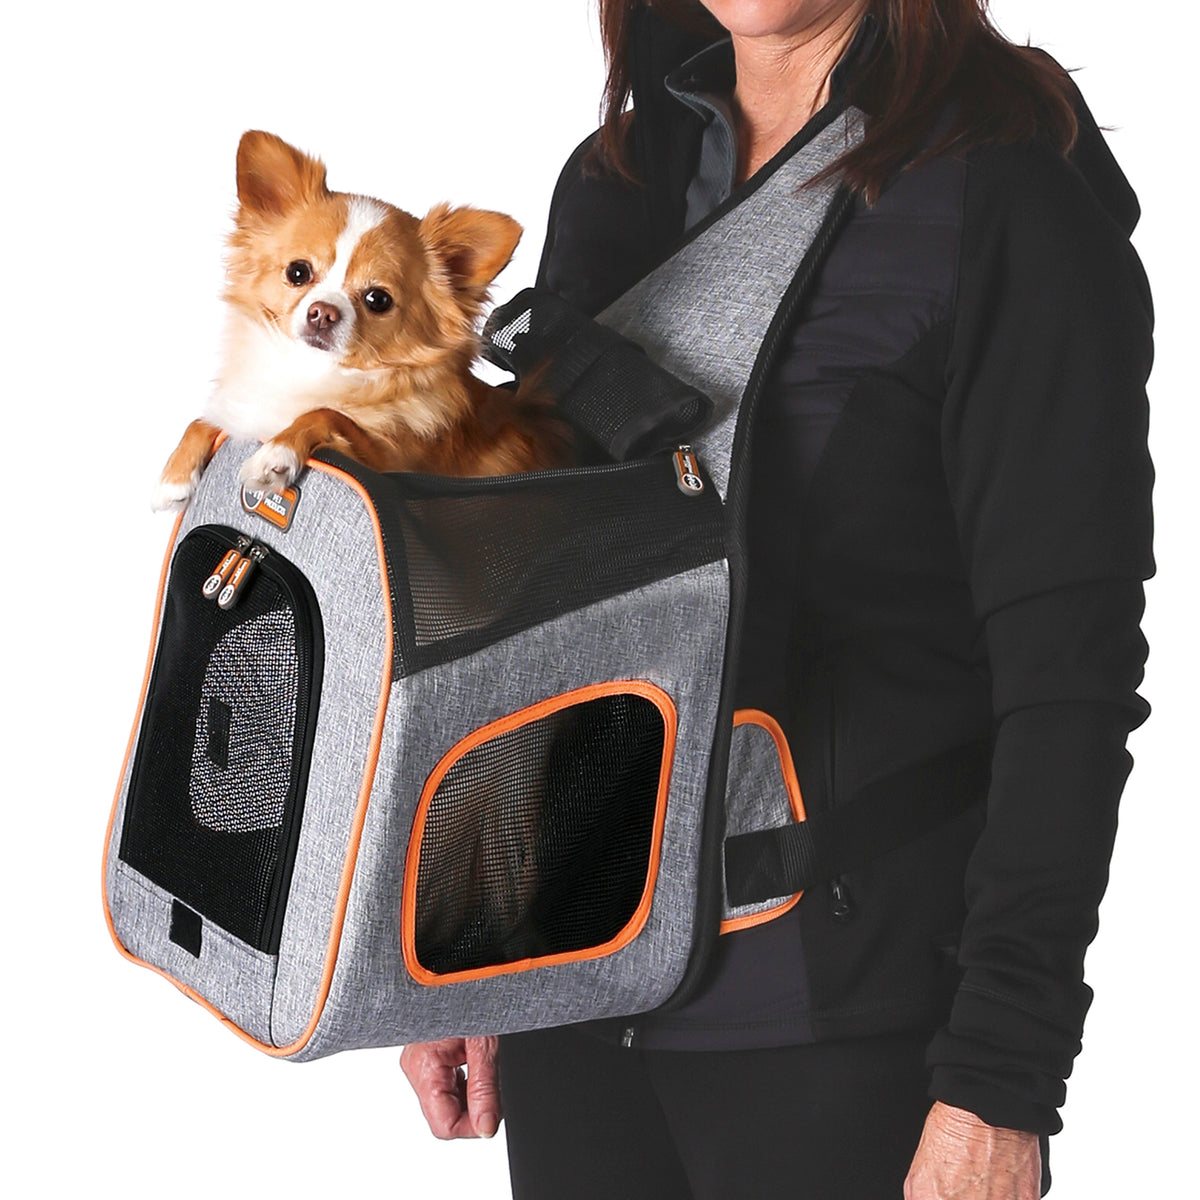 K&H Lookout Pet Carrier — K&H Pet Products